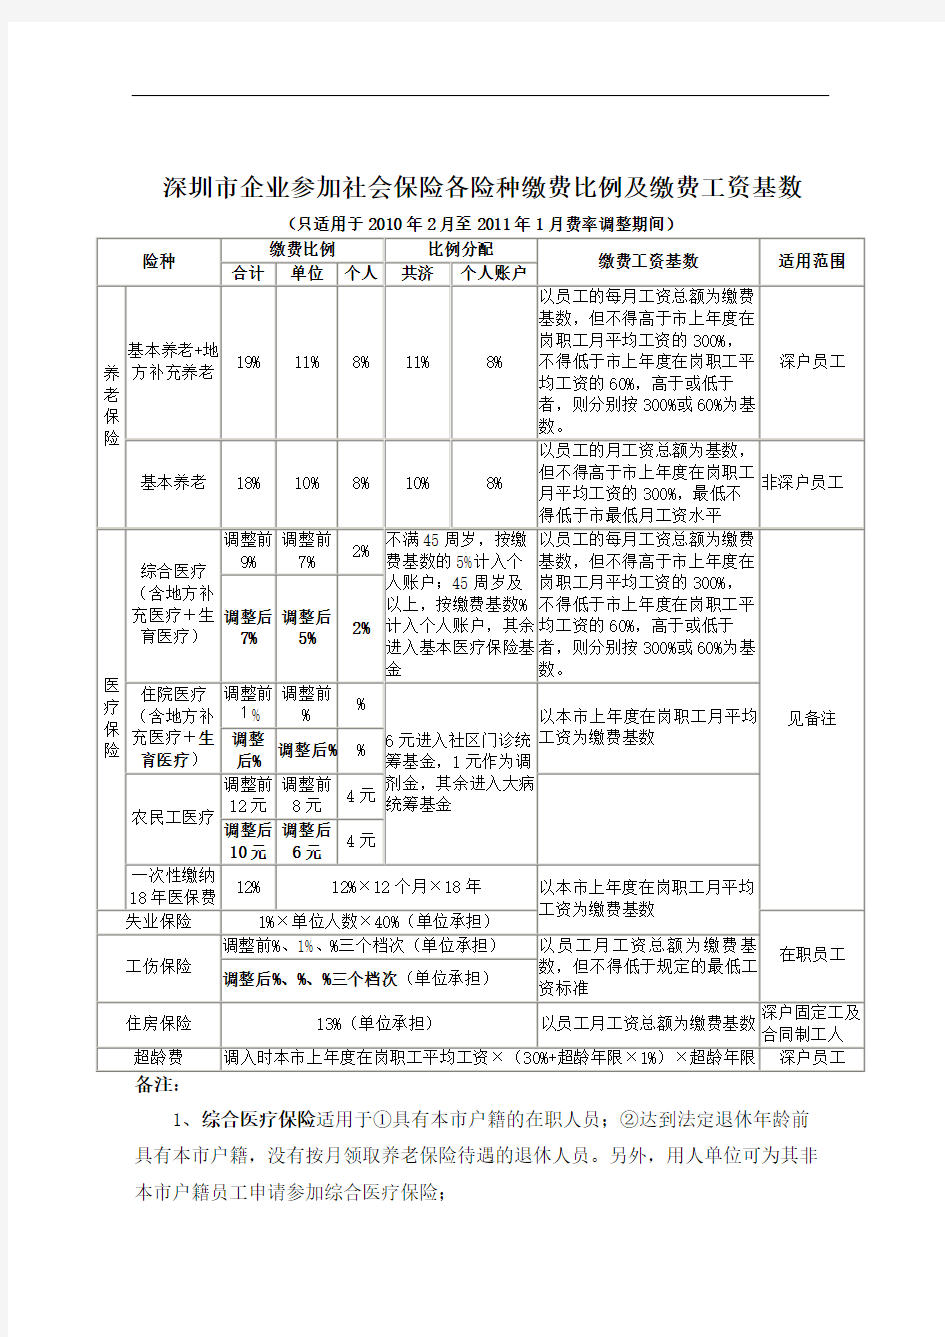 深圳市企业参加社会保险各险种缴费比例及缴费工资基数